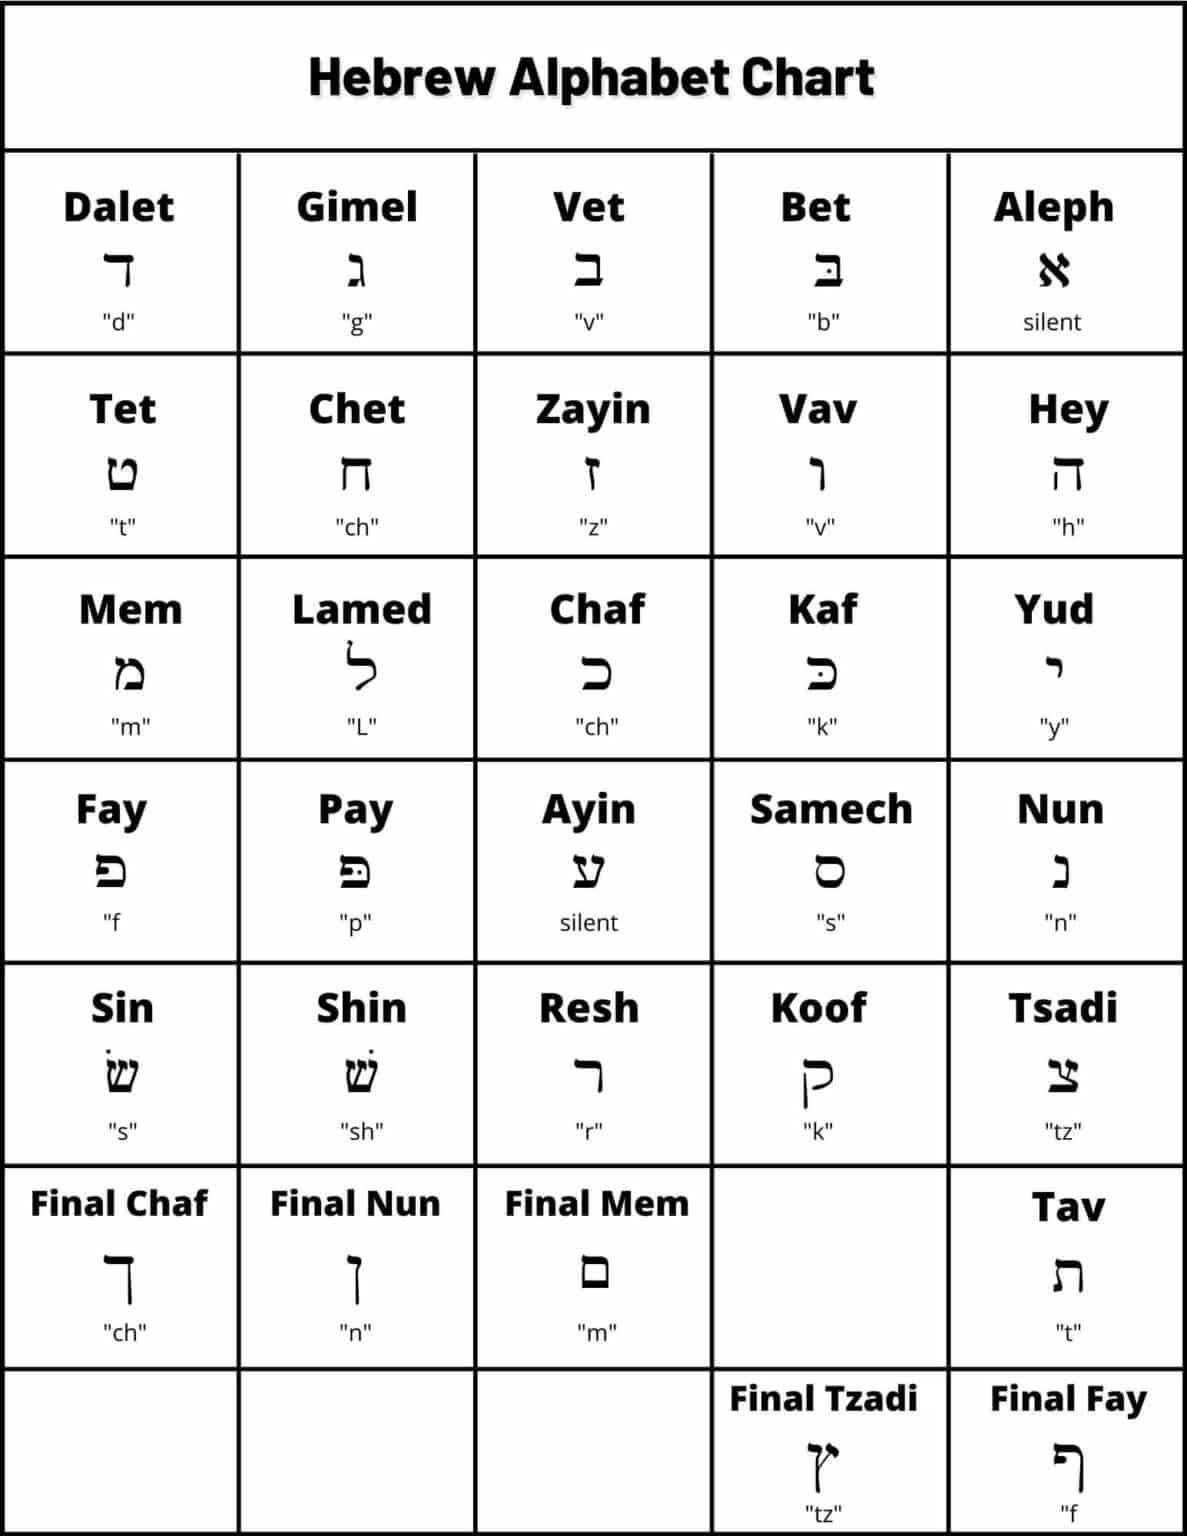 hebrew audio pronunciation